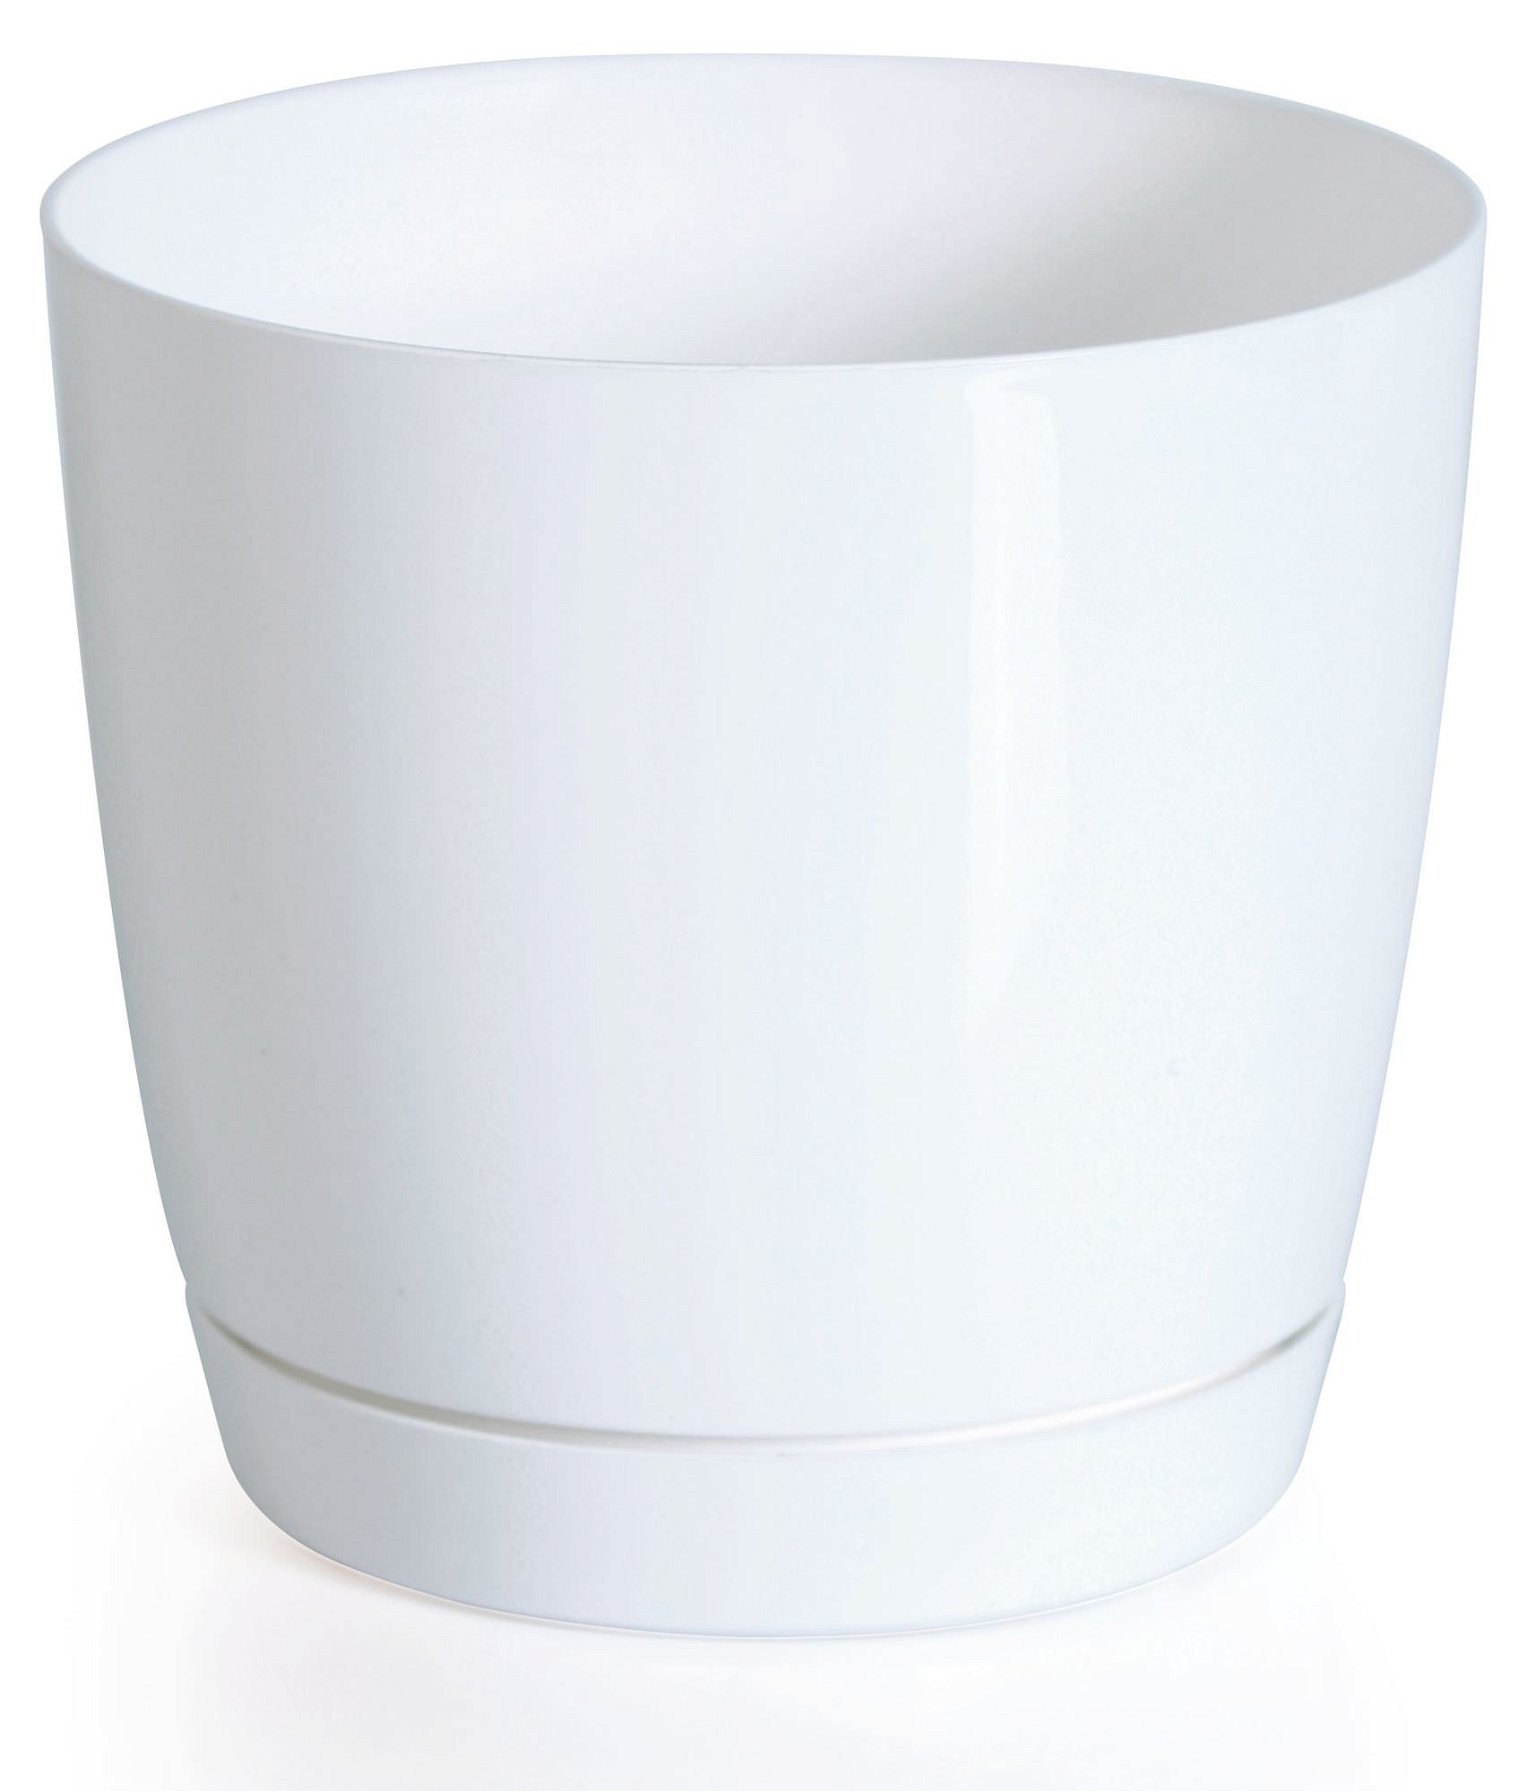 Plastikinis vazonas COUBI ROUND P, su lėkštele, baltos sp., 15,5 x 14,2 cm